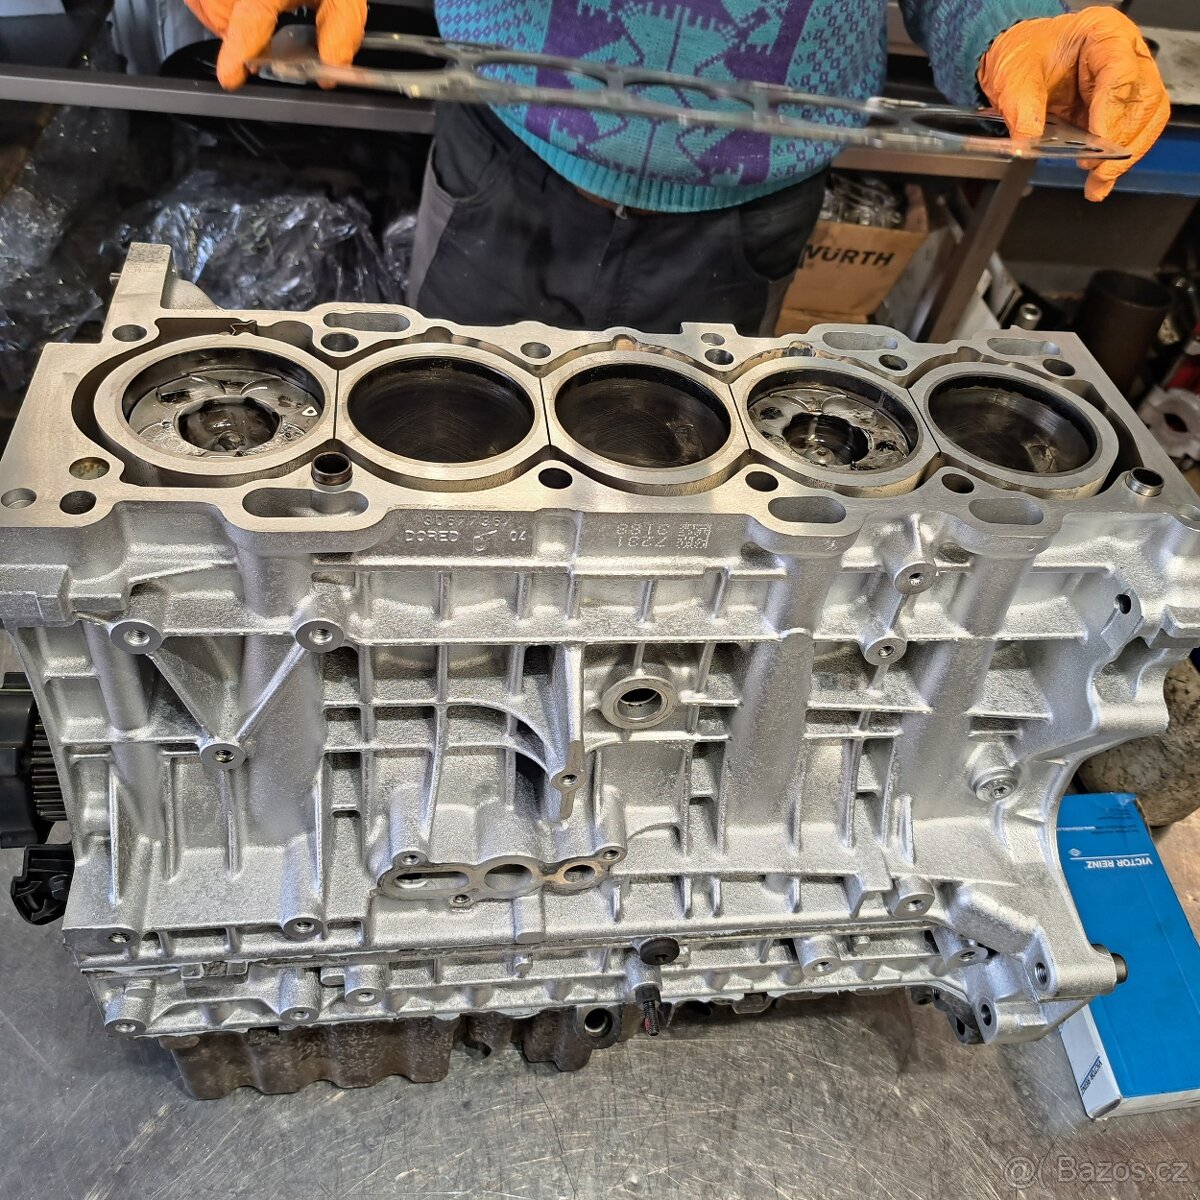 Volvo blok motoru D5 - pětiválec - opravený se zárukou